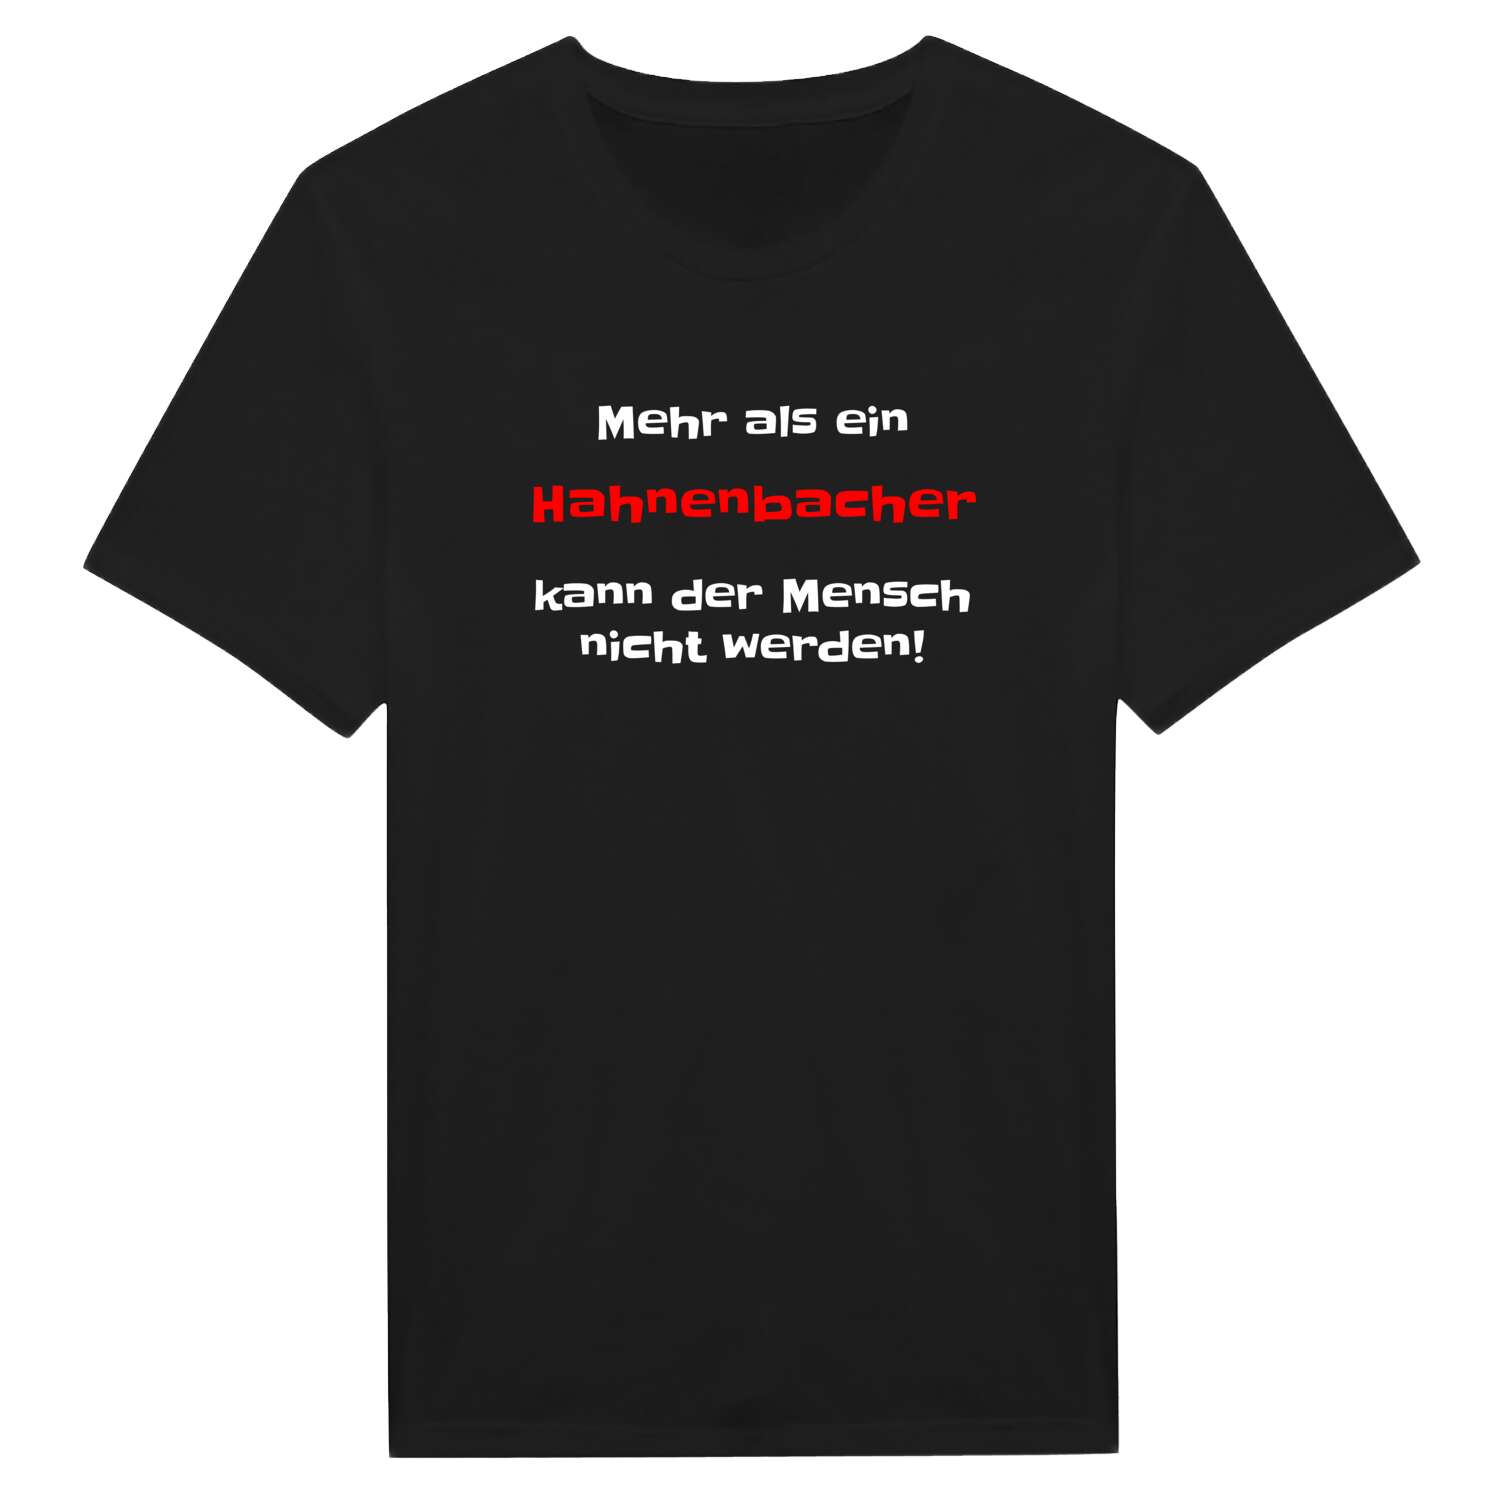 Hahnenbach T-Shirt »Mehr als ein«